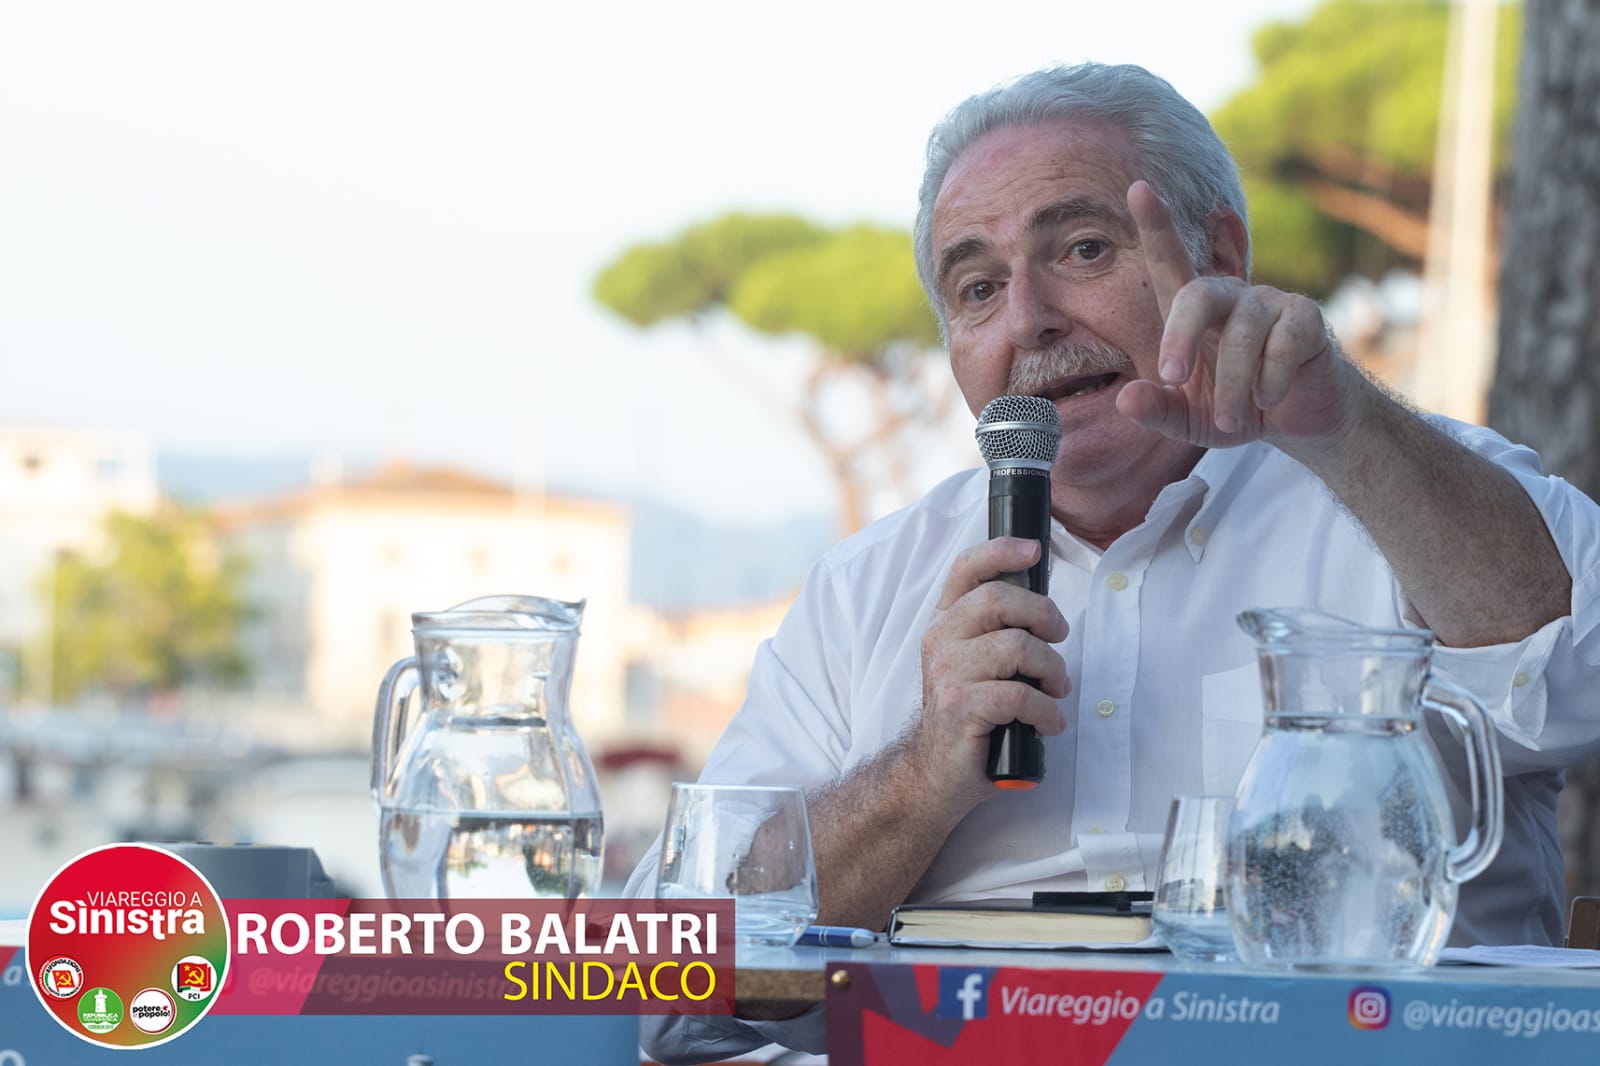 Nessun consigliere per Roberto Balatri: “Faremo opposizione tra la gente, in mezzo alle strade”